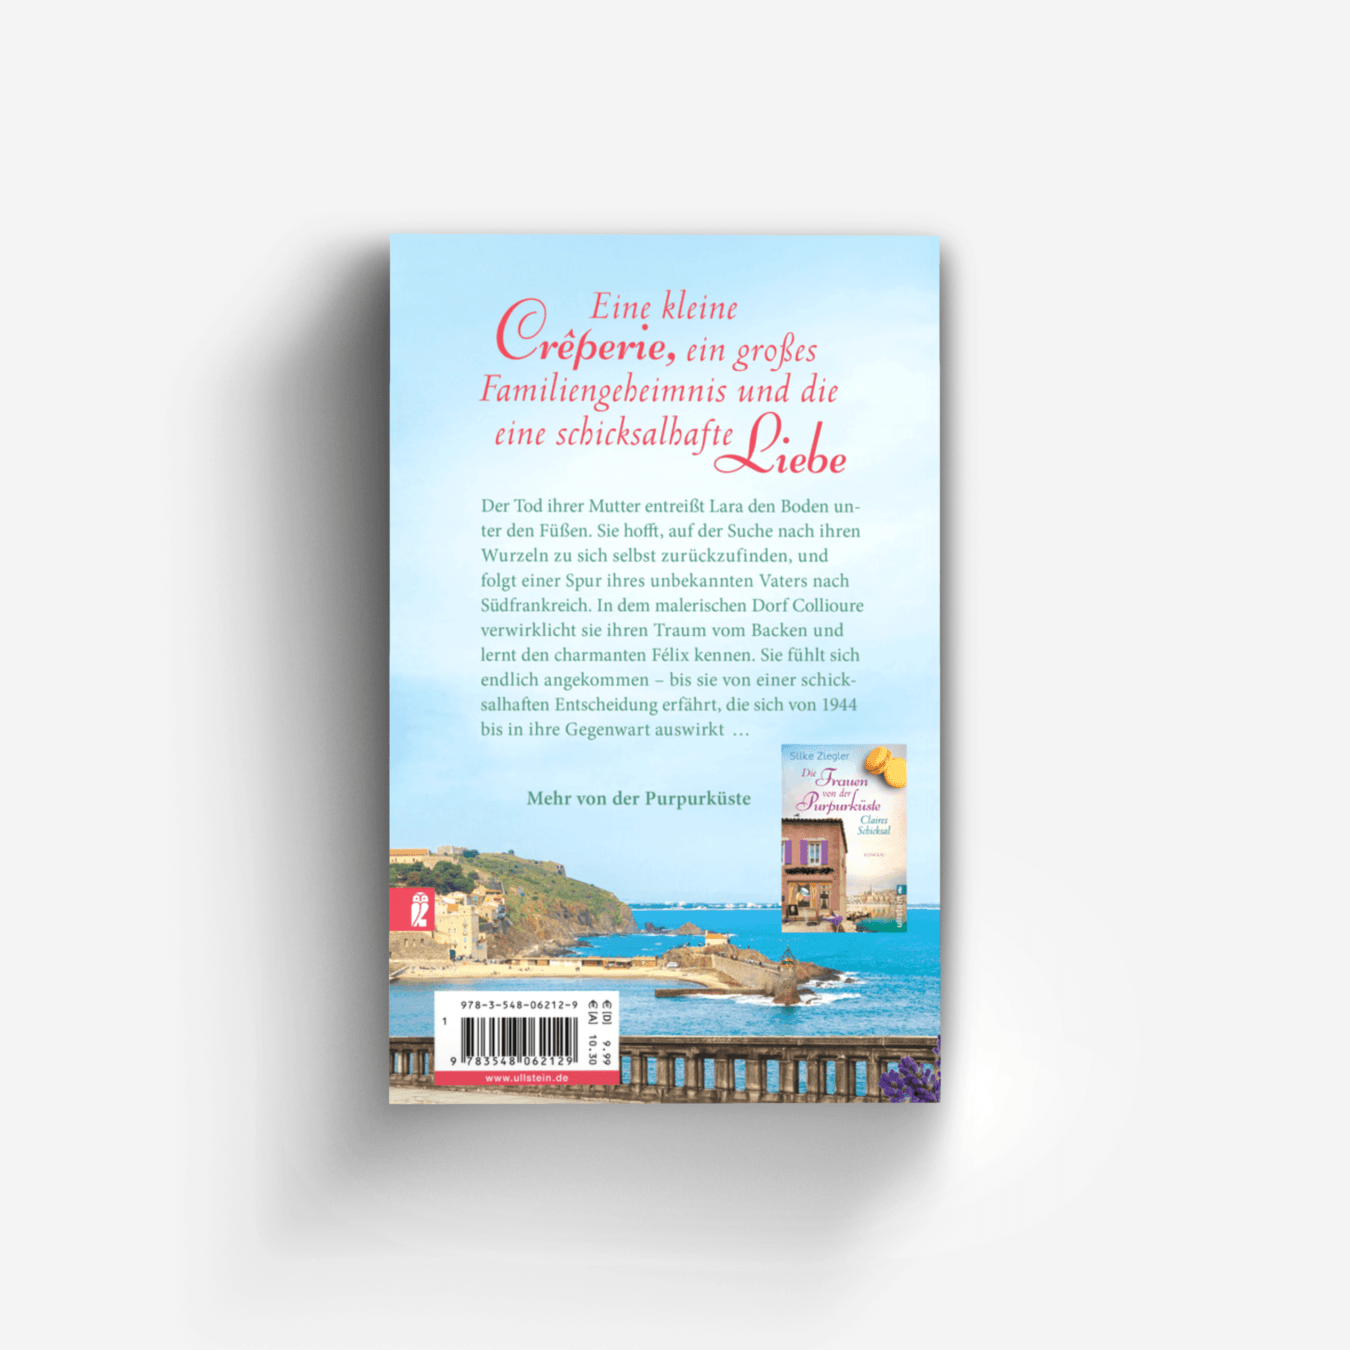 Buchcover von Die Frauen von der Purpurküste – Julies Entscheidung (Die Purpurküsten-Reihe 2)